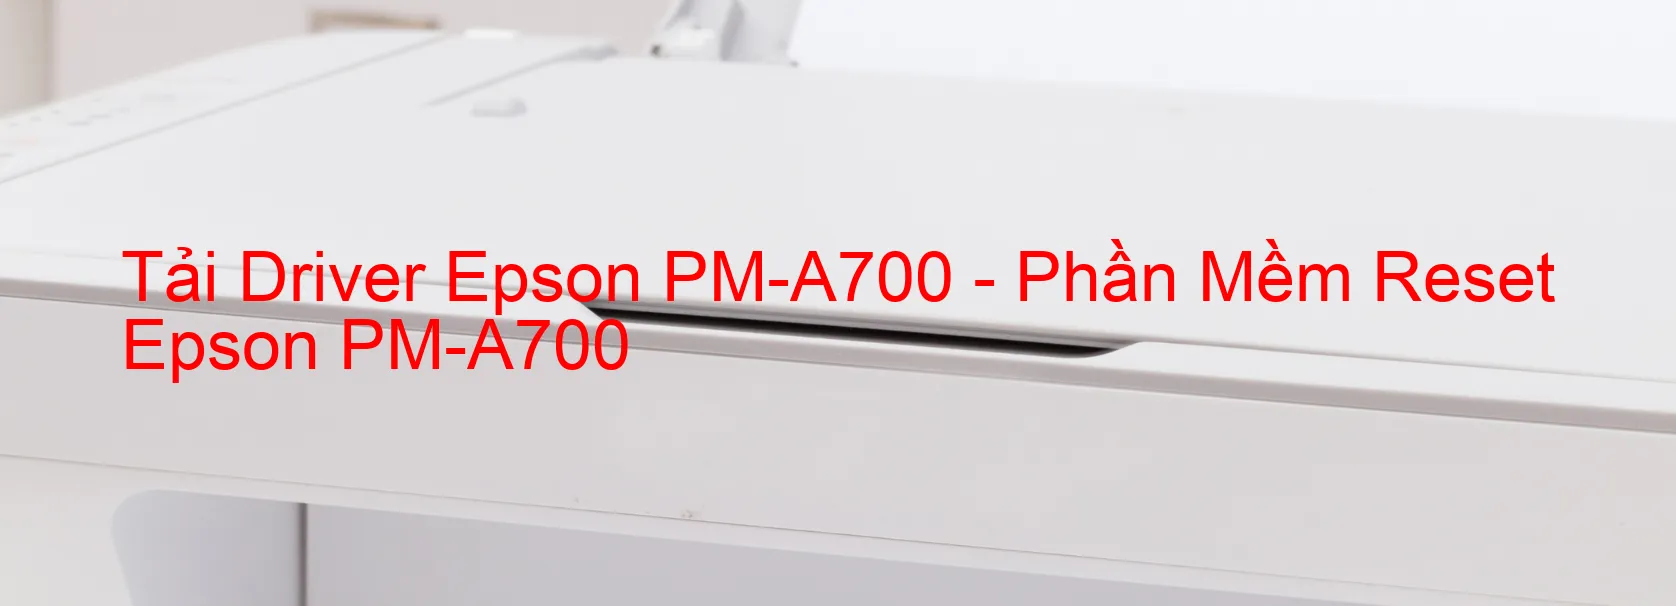 Driver Epson PM-A700, Phần Mềm Reset Epson PM-A700